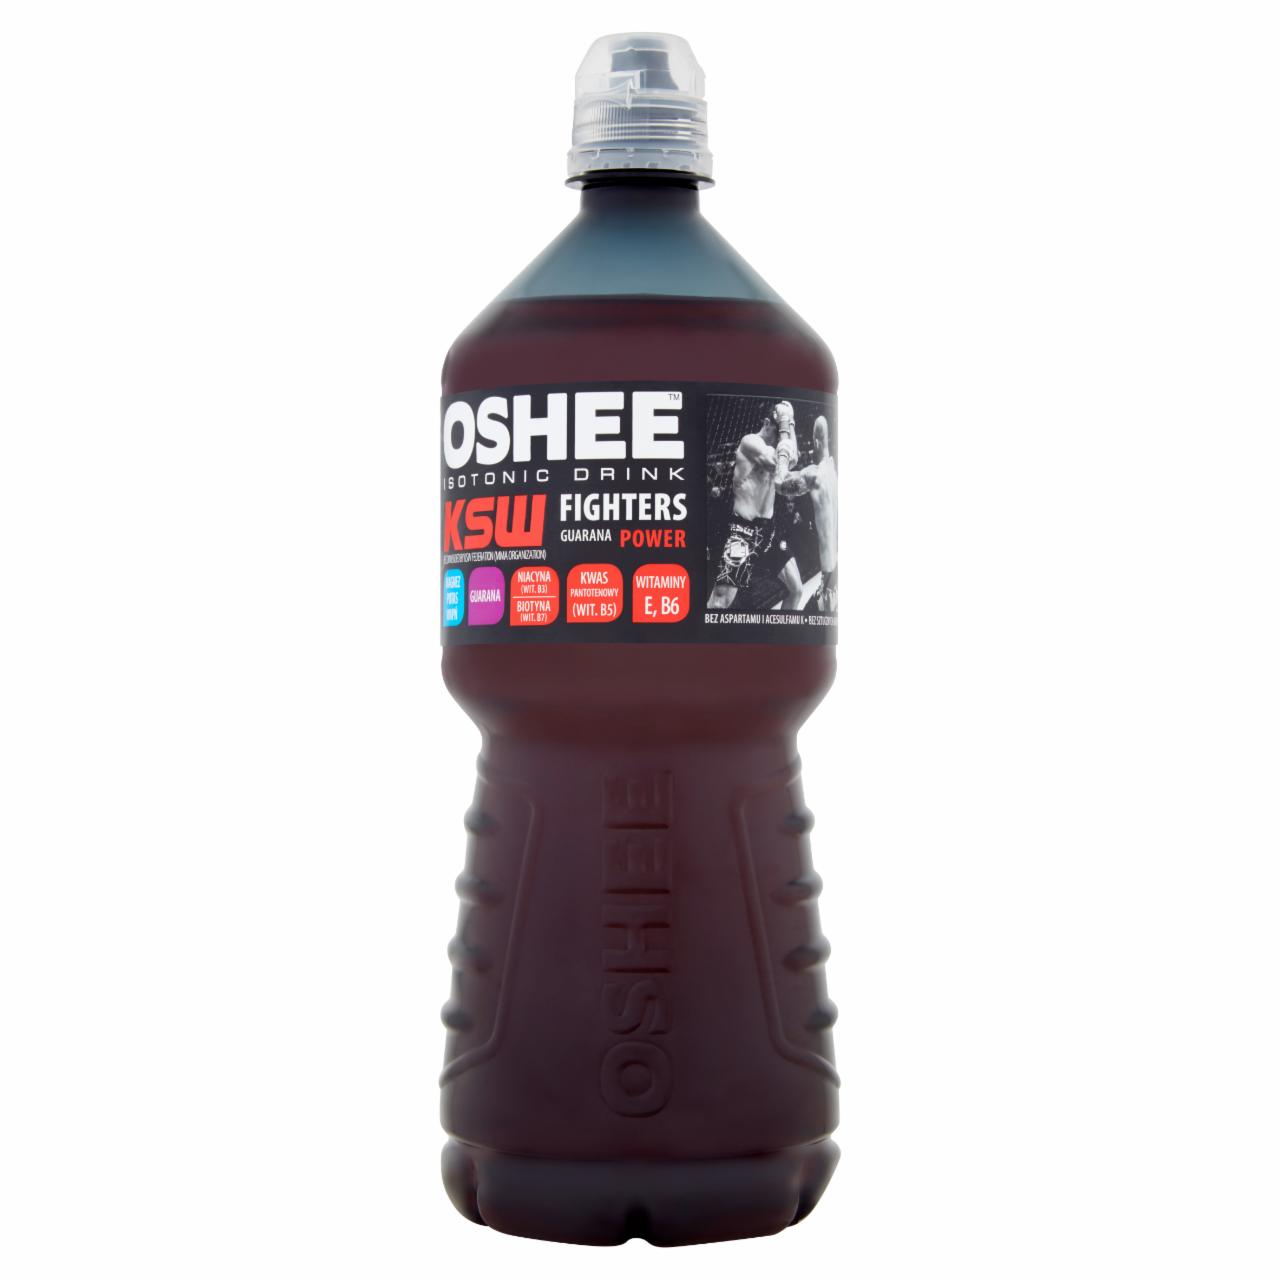 Zdjęcia - Oshee KWS Fighters Napój izotoniczny niegazowany o smaku czarnej porzeczki 1 l